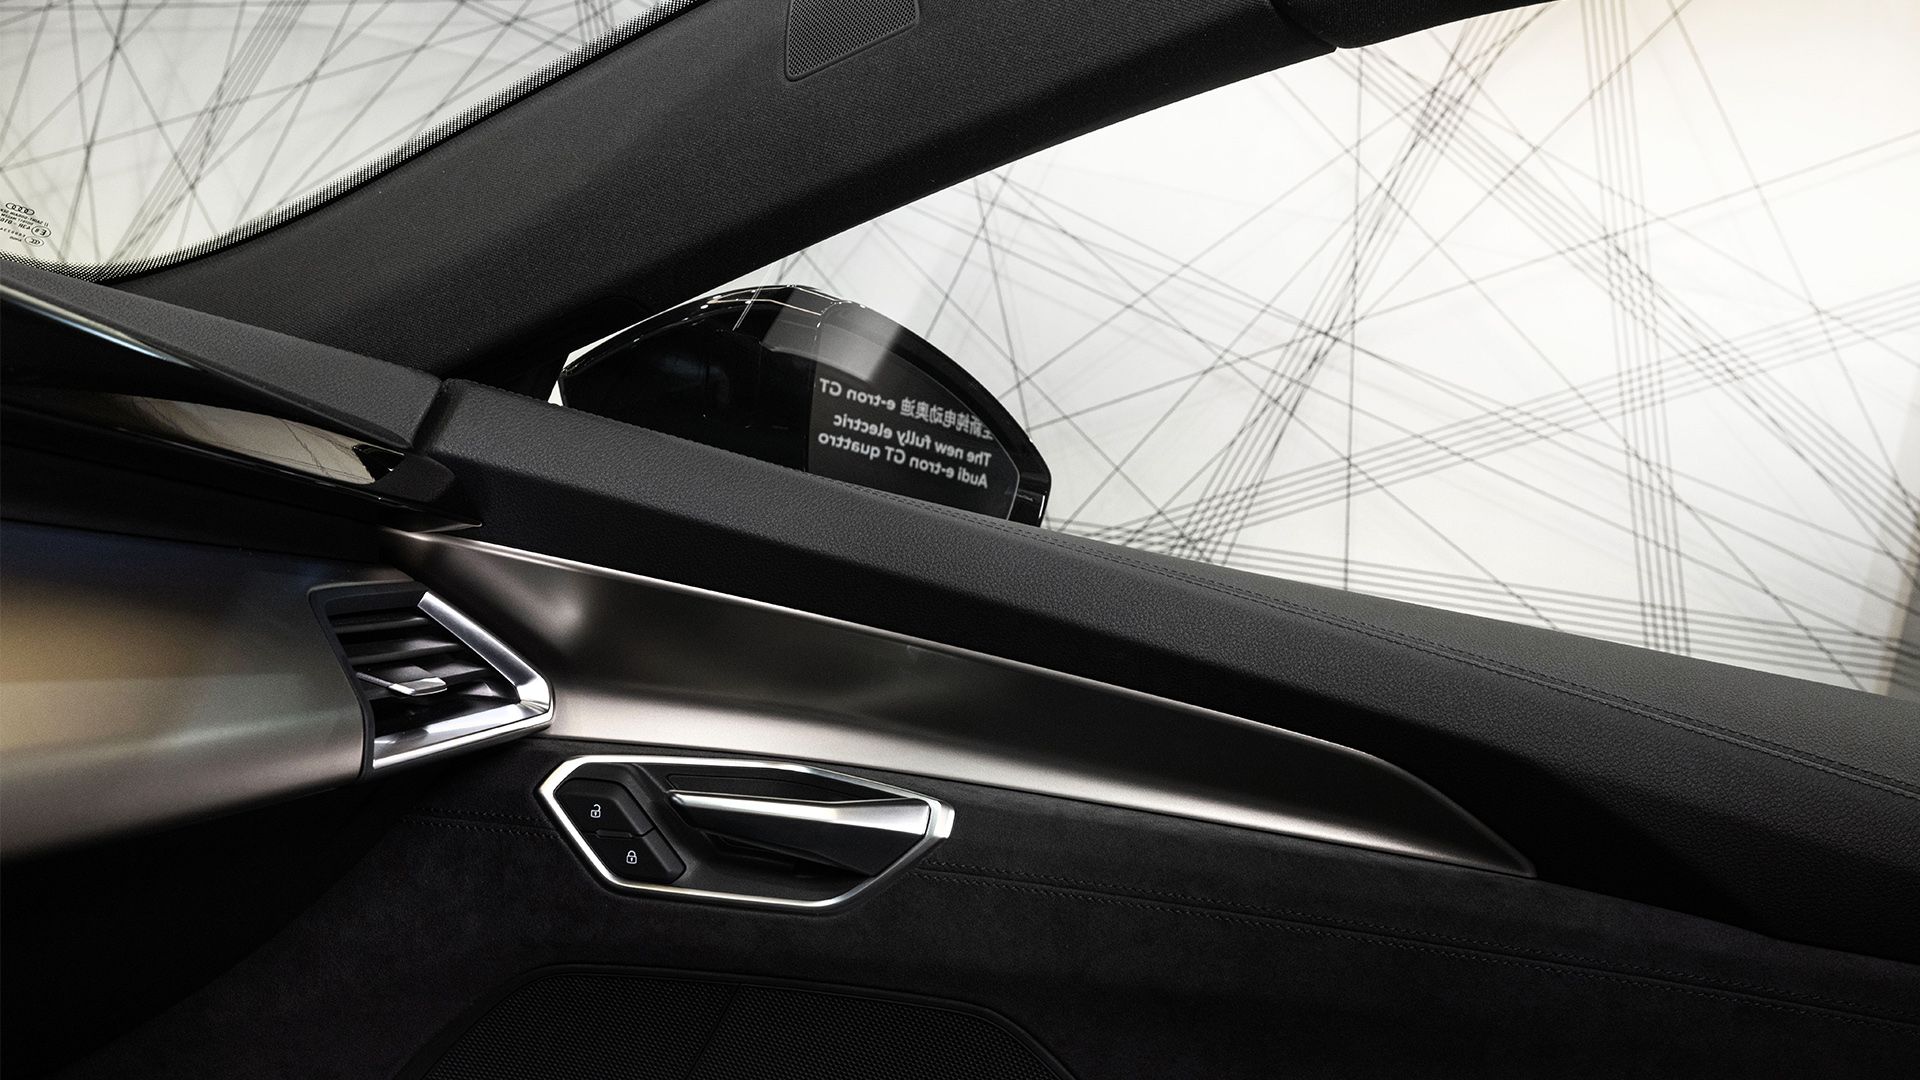 Vista dall'interno dell'Audi e-tron GT quattro sull'installazione.